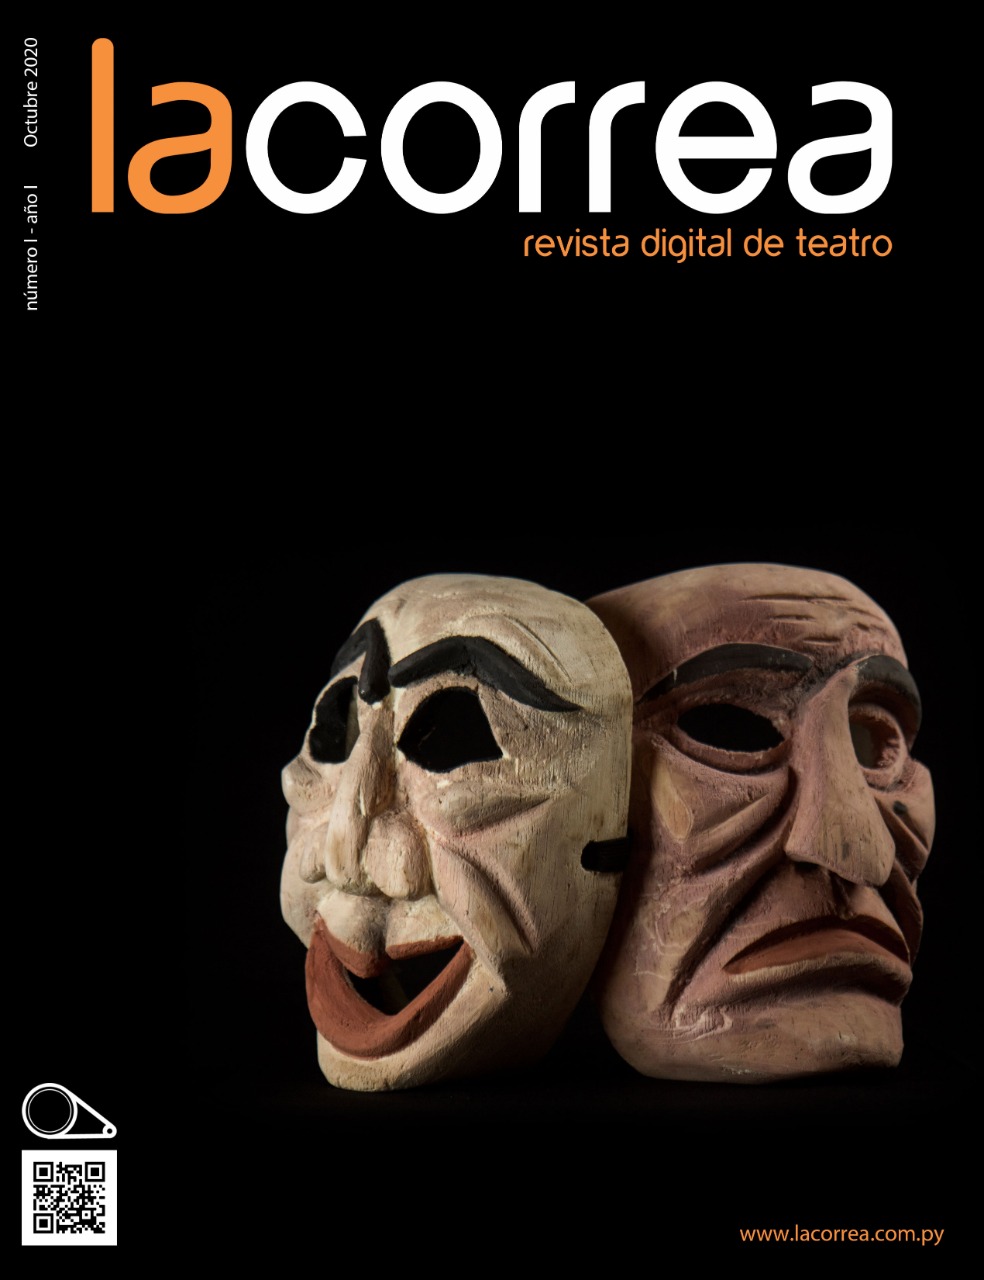 Fondos de Cultura: lanzan “La Correa, revista digital de teatro” imagen